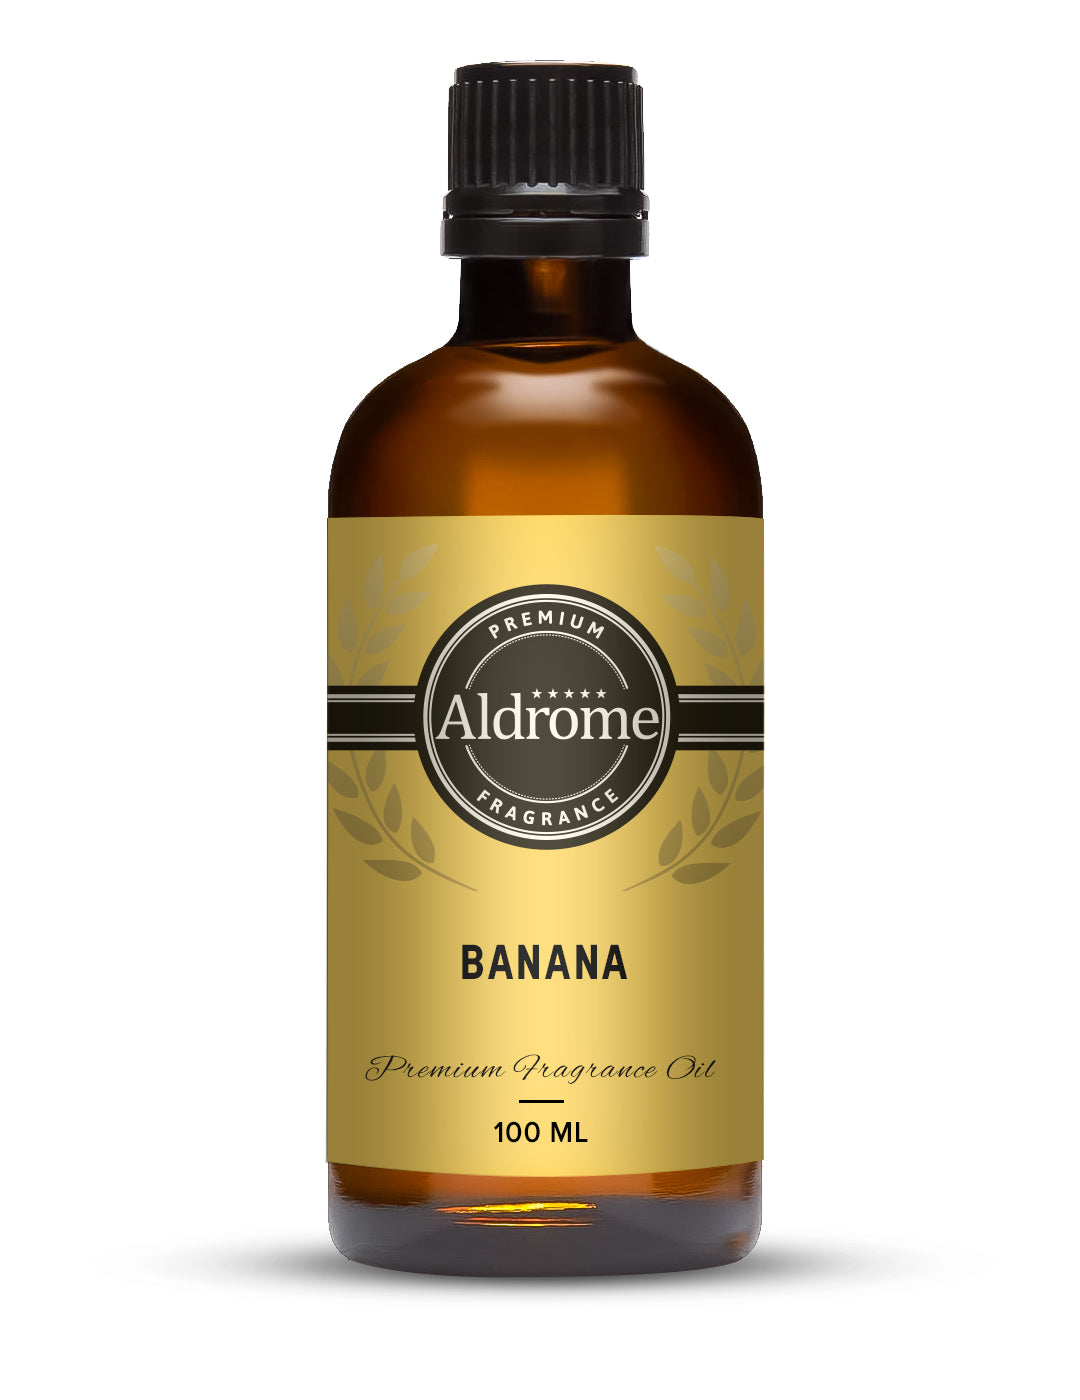 Banana Fragrance Oil - 100ml | Buy Banana  Fragrance Oil | Aldrome Premium Fragrance Oil